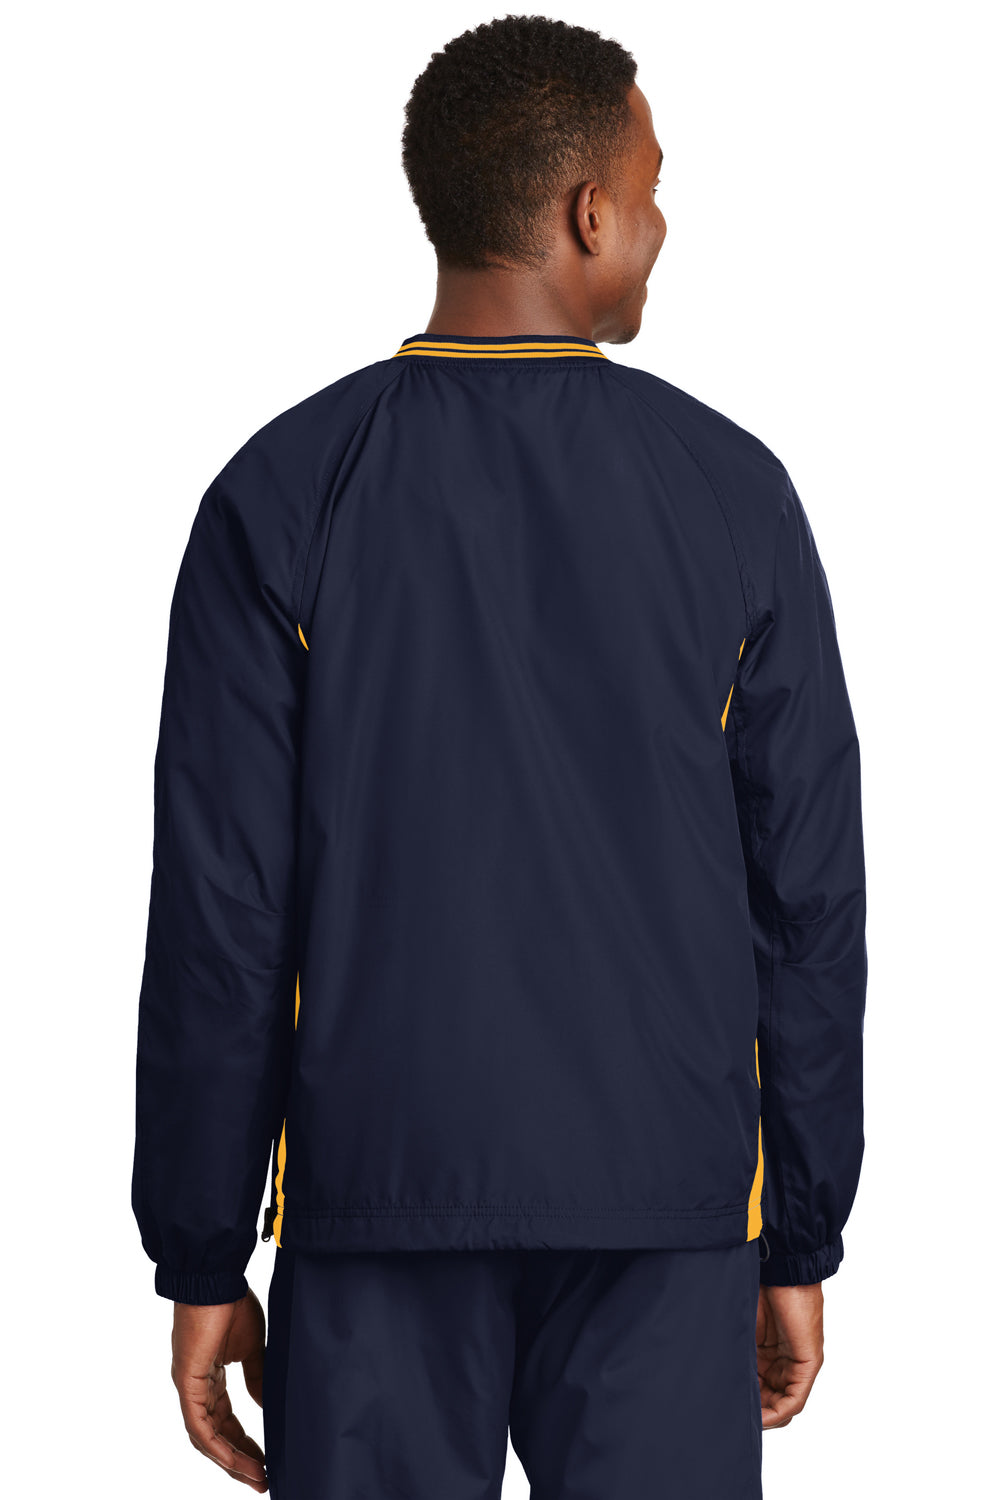 Sport-Tek JST62 Mens Wind & Water Resistant V-Neck Jacket Navy Blue/Gold Back